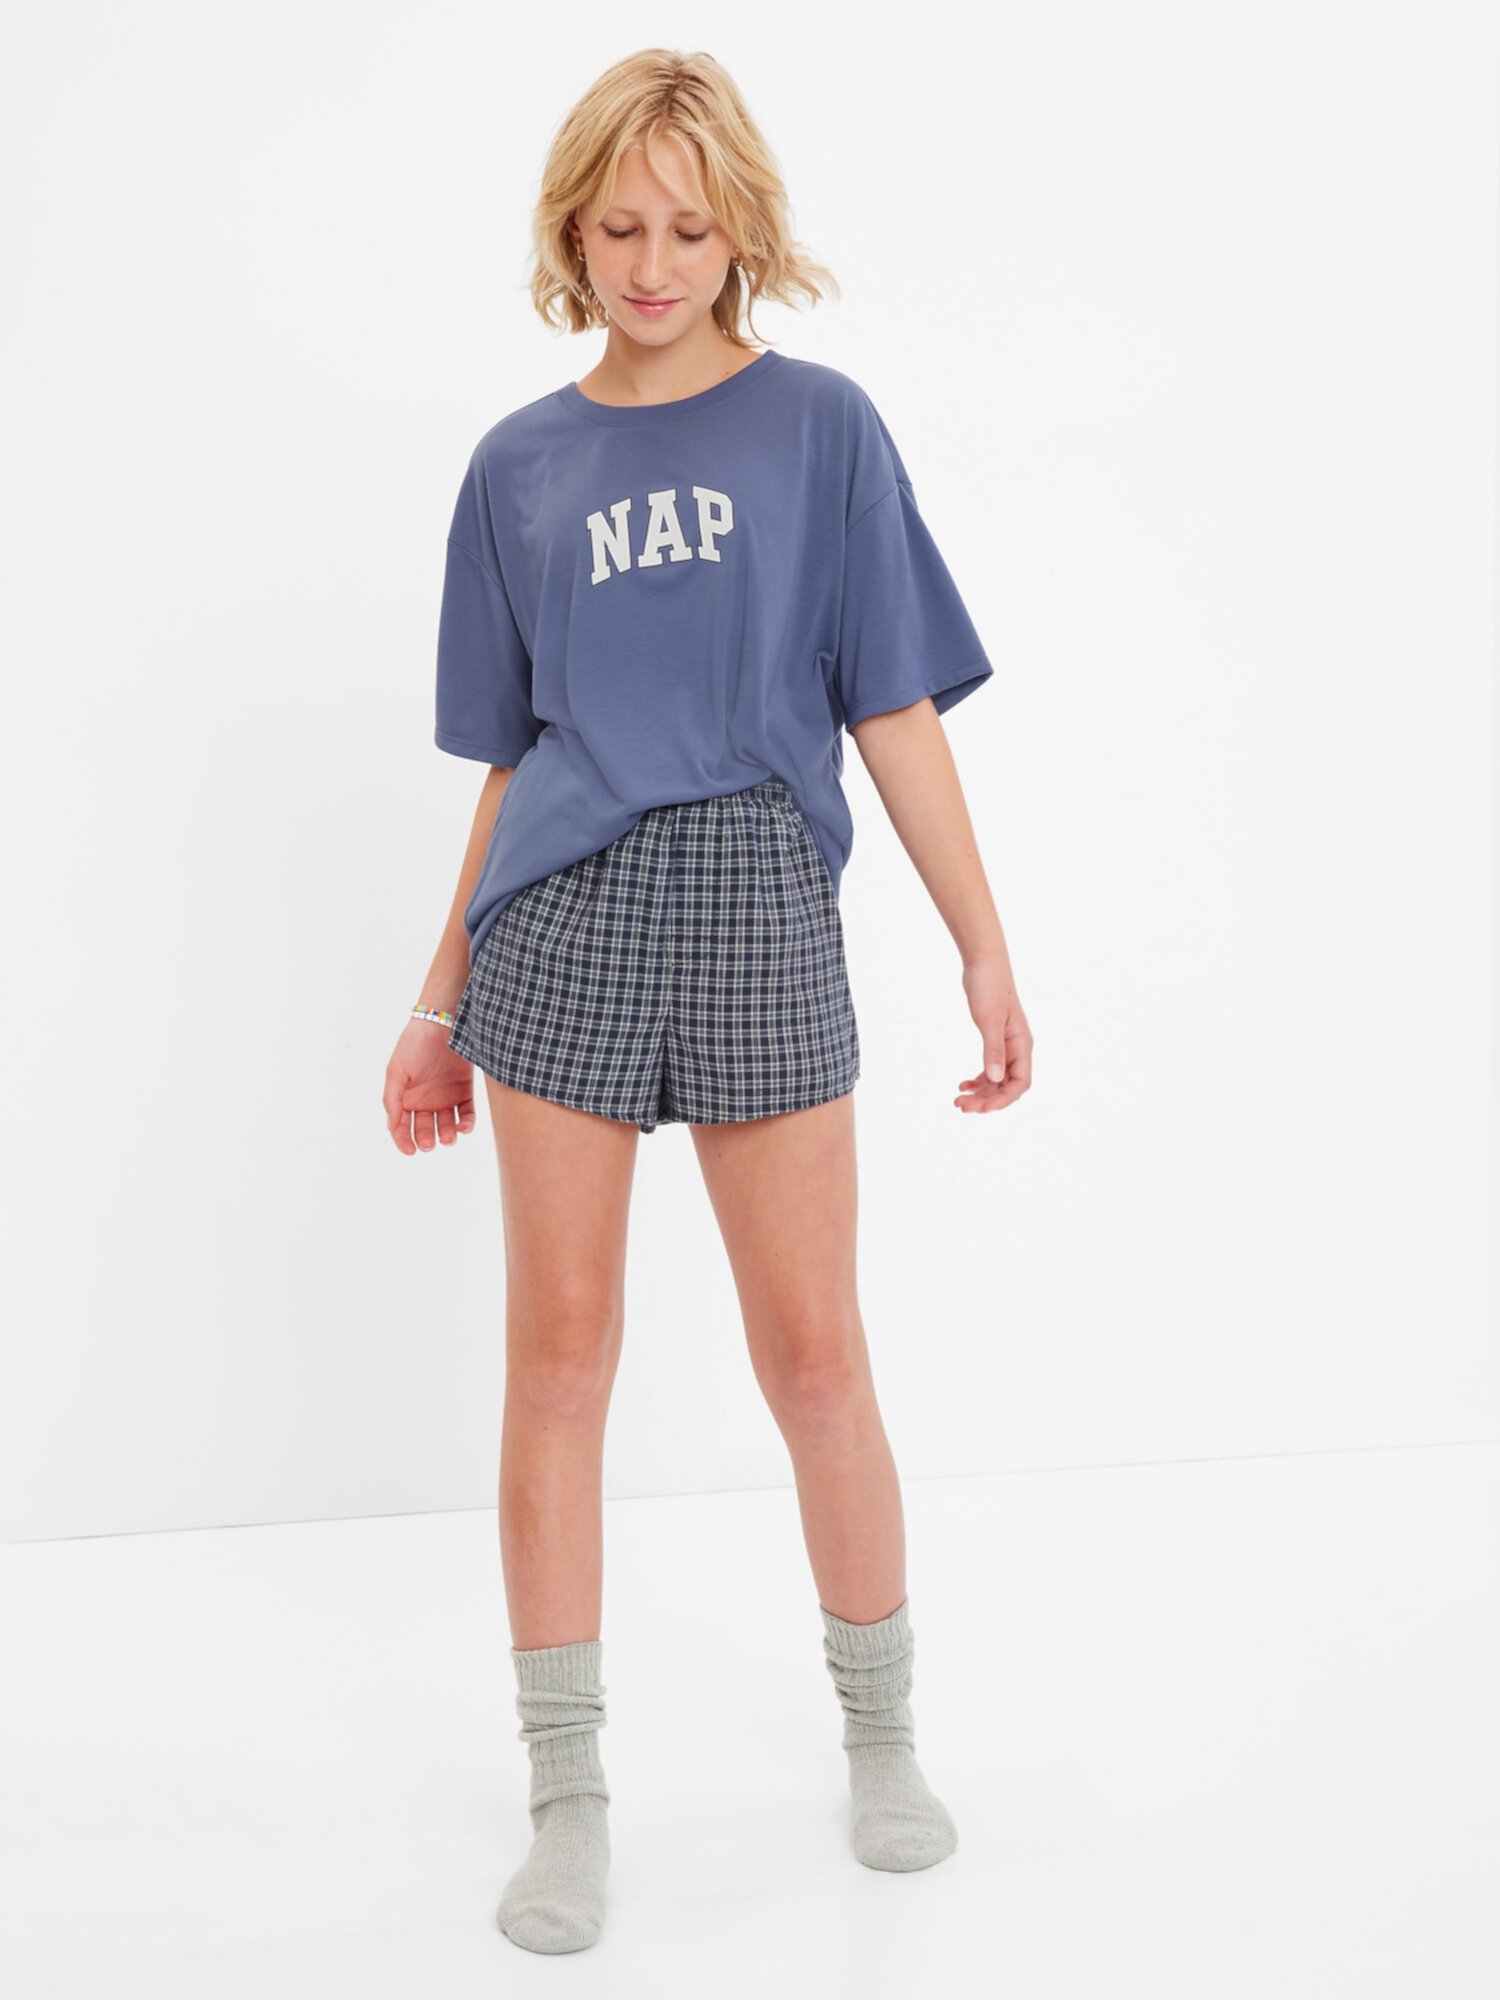 Подростковый комплект пижамных шорт из 100% переработанного материала Gap